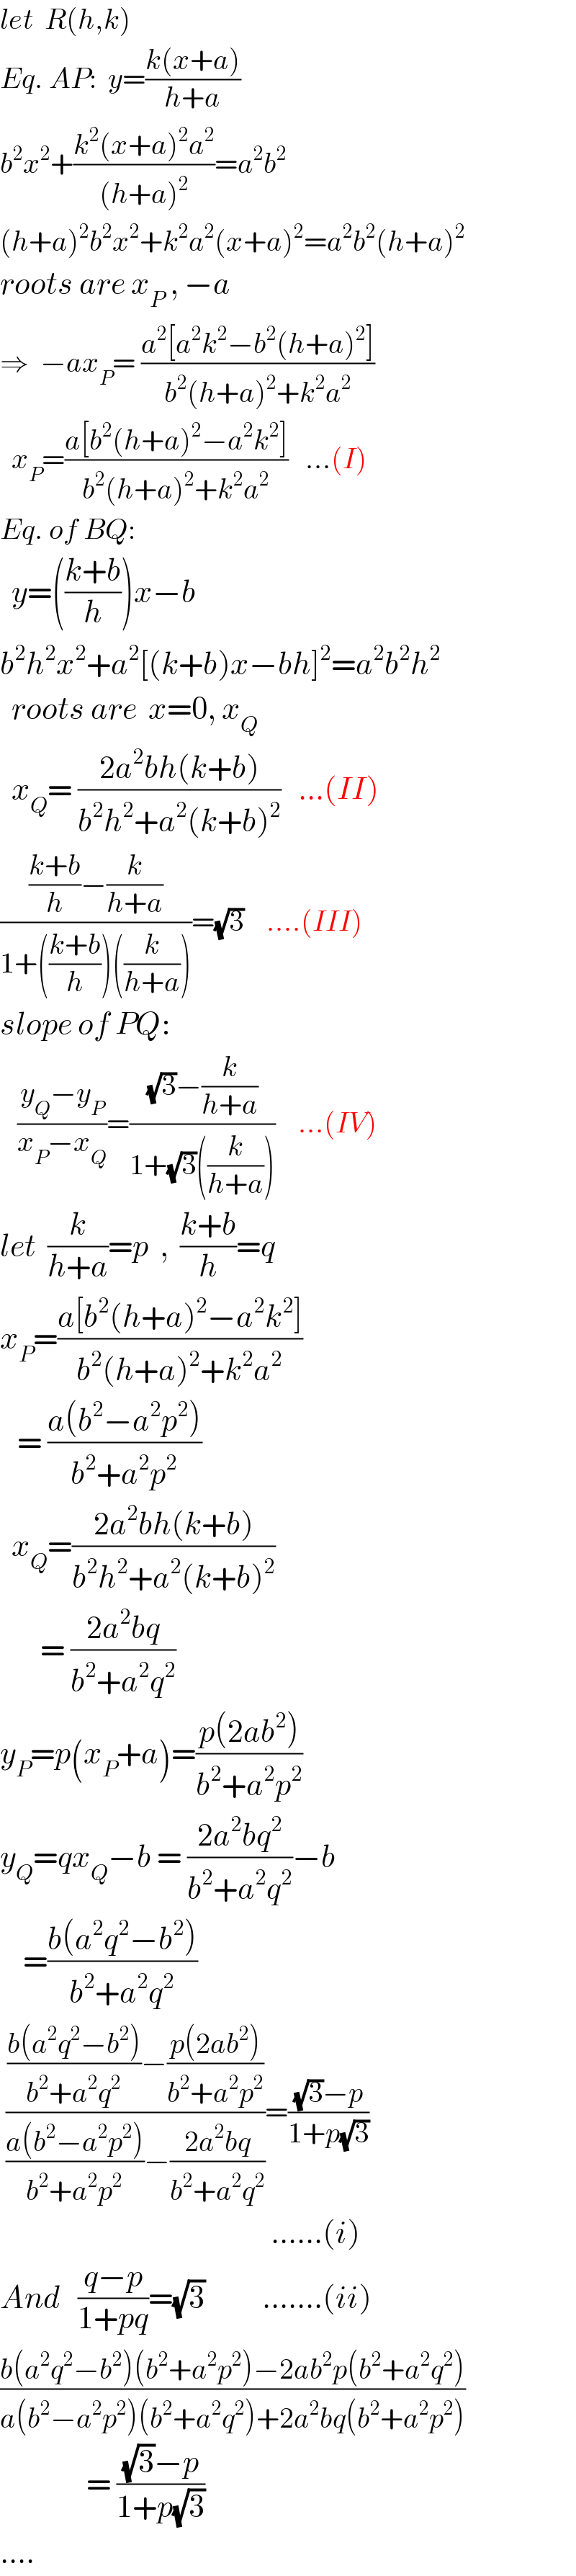 let  R(h,k)  Eq. AP:  y=((k(x+a))/(h+a))  b^2 x^2 +((k^2 (x+a)^2 a^2 )/((h+a)^2 ))=a^2 b^2   (h+a)^2 b^2 x^2 +k^2 a^2 (x+a)^2 =a^2 b^2 (h+a)^2   roots are x_P  , −a  ⇒  −ax_P = ((a^2 [a^2 k^2 −b^2 (h+a)^2 ])/(b^2 (h+a)^2 +k^2 a^2 ))     x_P =((a[b^2 (h+a)^2 −a^2 k^2 ])/(b^2 (h+a)^2 +k^2 a^2 ))   ...(I)  Eq. of BQ:    y=(((k+b)/h))x−b  b^2 h^2 x^2 +a^2 [(k+b)x−bh]^2 =a^2 b^2 h^2     roots are  x=0, x_Q     x_Q = ((2a^2 bh(k+b))/(b^2 h^2 +a^2 (k+b)^2 ))   ...(II)  ((((k+b)/h)−(k/(h+a)))/(1+(((k+b)/h))((k/(h+a)))))=(√3)    ....(III)  slope of PQ:     ((y_Q −y_P )/(x_P −x_Q ))=(((√3)−(k/(h+a)))/(1+(√3)((k/(h+a)))))    ...(IV)  let  (k/(h+a))=p  ,  ((k+b)/h)=q  x_P =((a[b^2 (h+a)^2 −a^2 k^2 ])/(b^2 (h+a)^2 +k^2 a^2 ))     = ((a(b^2 −a^2 p^2 ))/(b^2 +a^2 p^2 ))    x_Q =((2a^2 bh(k+b))/(b^2 h^2 +a^2 (k+b)^2 ))         = ((2a^2 bq)/(b^2 +a^2 q^2 ))  y_P =p(x_P +a)=((p(2ab^2 ))/(b^2 +a^2 p^2 ))  y_Q =qx_Q −b = ((2a^2 bq^2 )/(b^2 +a^2 q^2 ))−b      =((b(a^2 q^2 −b^2 ))/(b^2 +a^2 q^2 ))   ((((b(a^2 q^2 −b^2 ))/(b^2 +a^2 q^2 ))−((p(2ab^2 ))/(b^2 +a^2 p^2 )))/(((a(b^2 −a^2 p^2 ))/(b^2 +a^2 p^2 ))−((2a^2 bq)/(b^2 +a^2 q^2 ))))=(((√3)−p)/(1+p(√3)))                                                 ......(i)  And   ((q−p)/(1+pq))=(√3)          .......(ii)  ((b(a^2 q^2 −b^2 )(b^2 +a^2 p^2 )−2ab^2 p(b^2 +a^2 q^2 ))/(a(b^2 −a^2 p^2 )(b^2 +a^2 q^2 )+2a^2 bq(b^2 +a^2 p^2 )))                 = (((√3)−p)/(1+p(√3)))   ....  